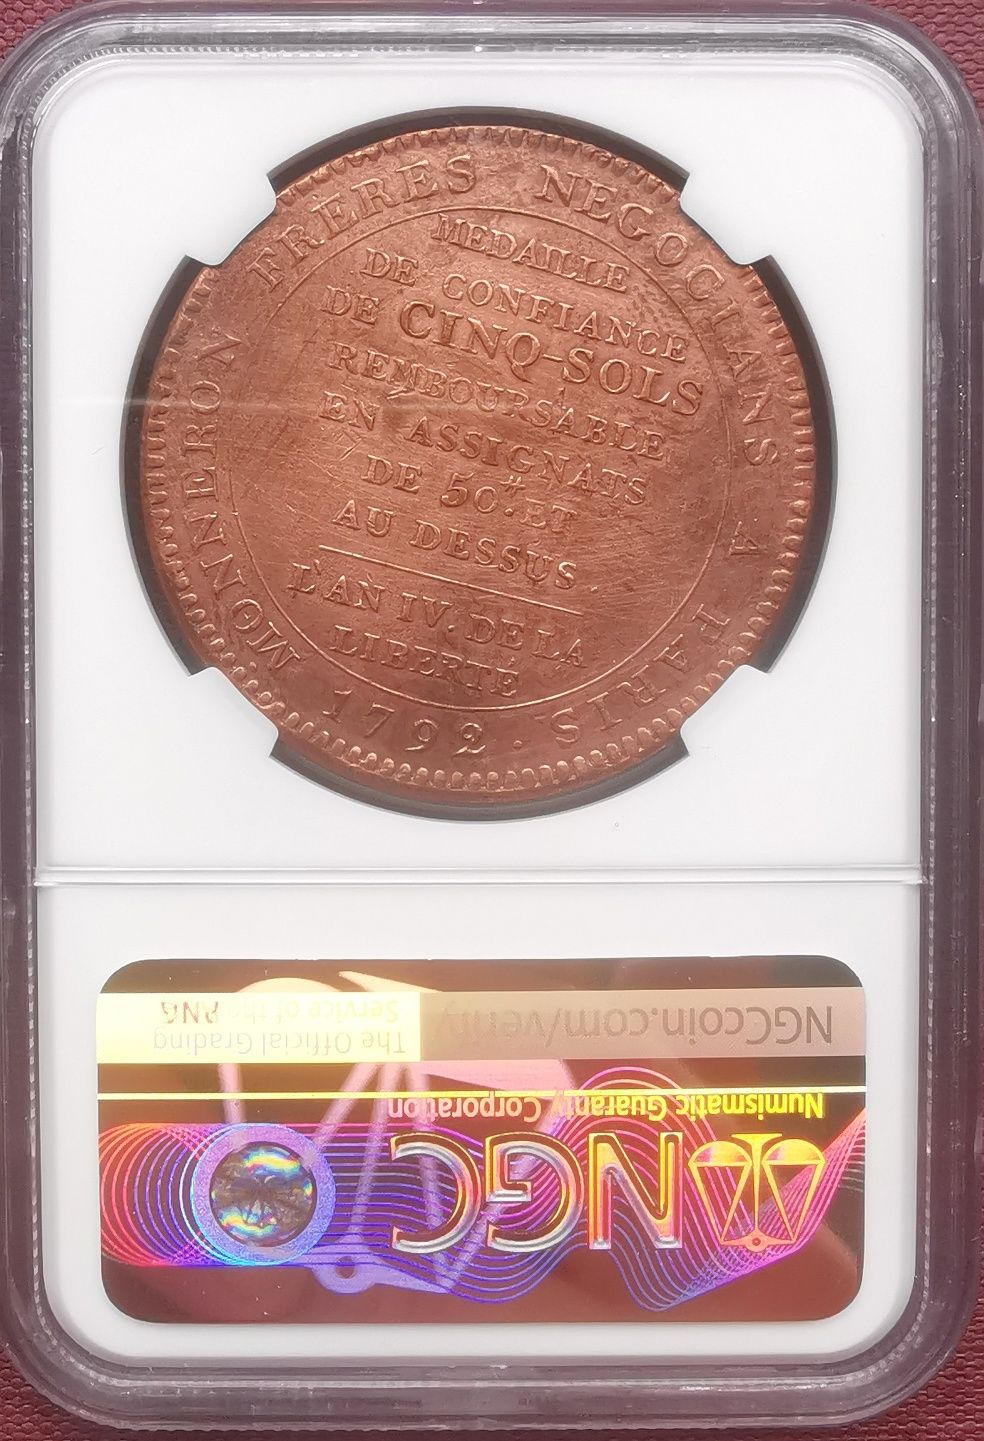 Moneta - żeton z czasów Rewolucji francuskiej grading NGC